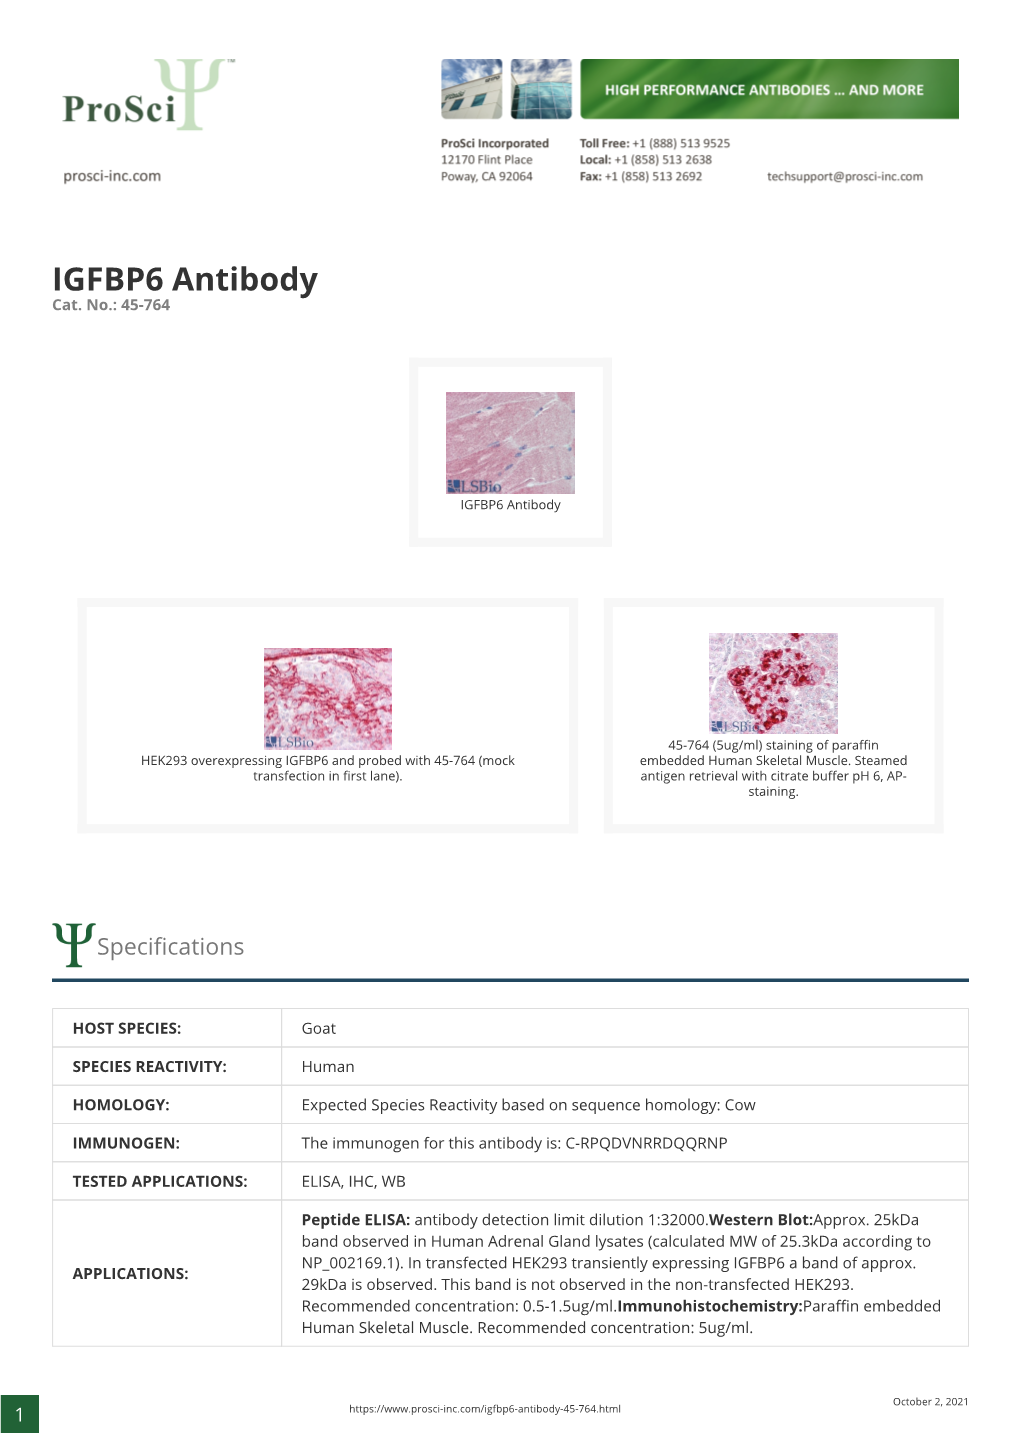 IGFBP6 Antibody Cat